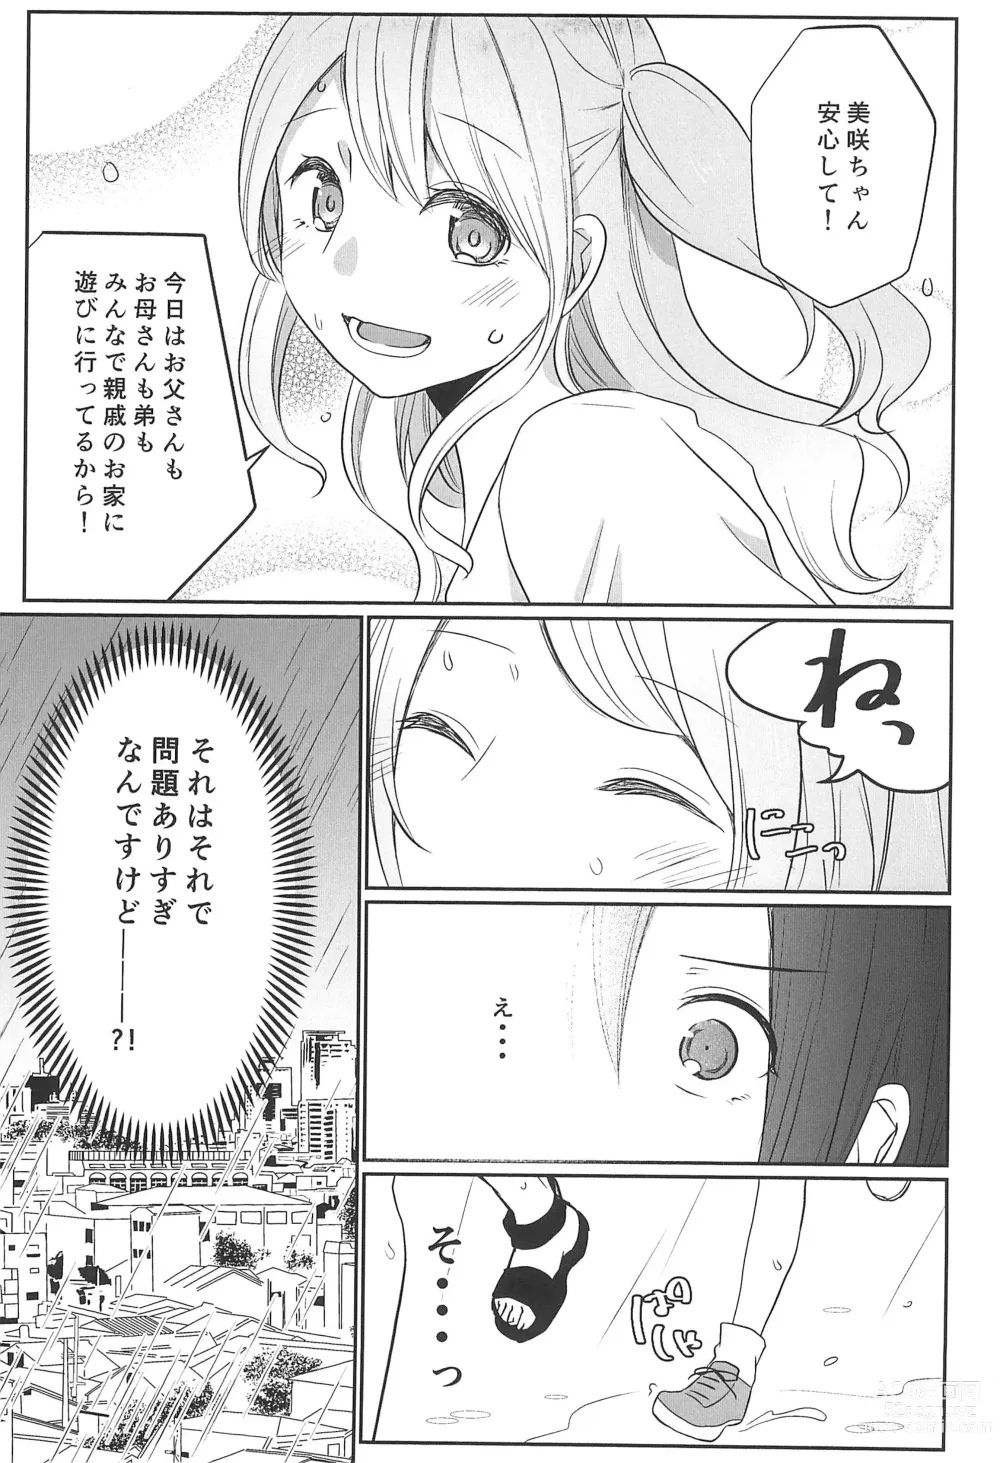 Page 7 of doujinshi Kitto Sonna Natsu no Hi no Omoide